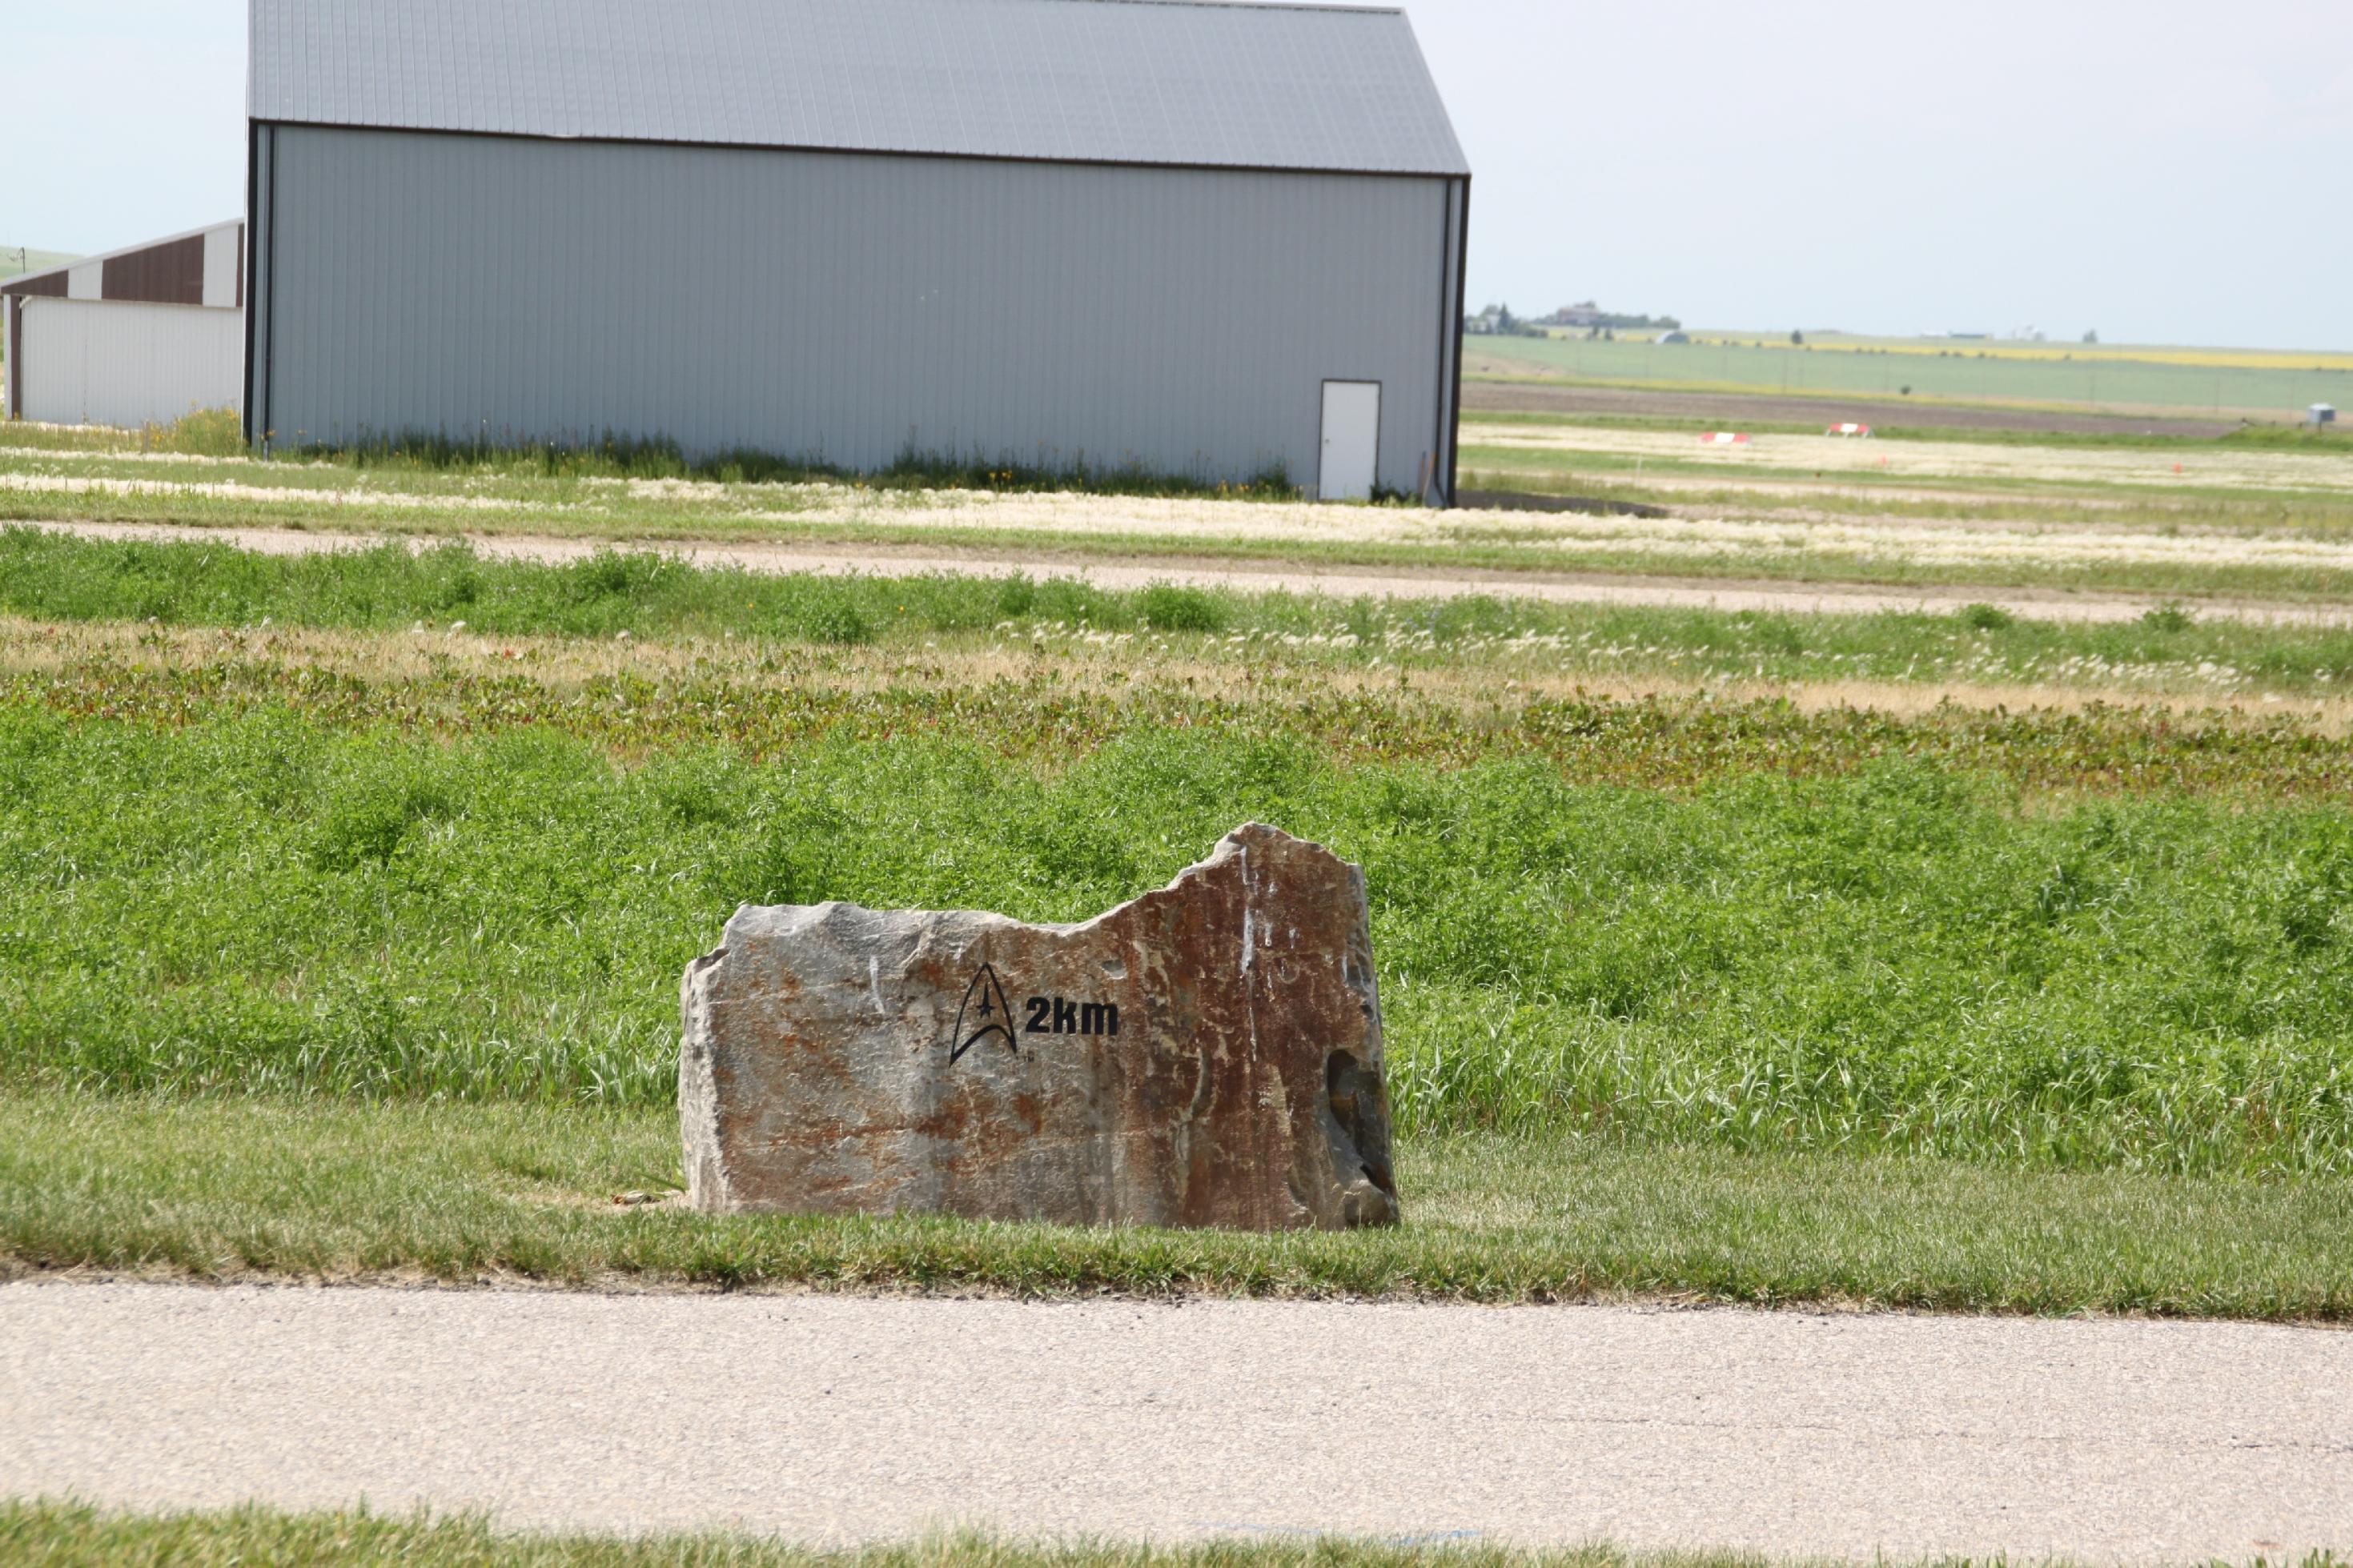 Auf einem Stein ist ein Star-Trek-Delta eingraviert. Dazu der Hinweis „2 km“.